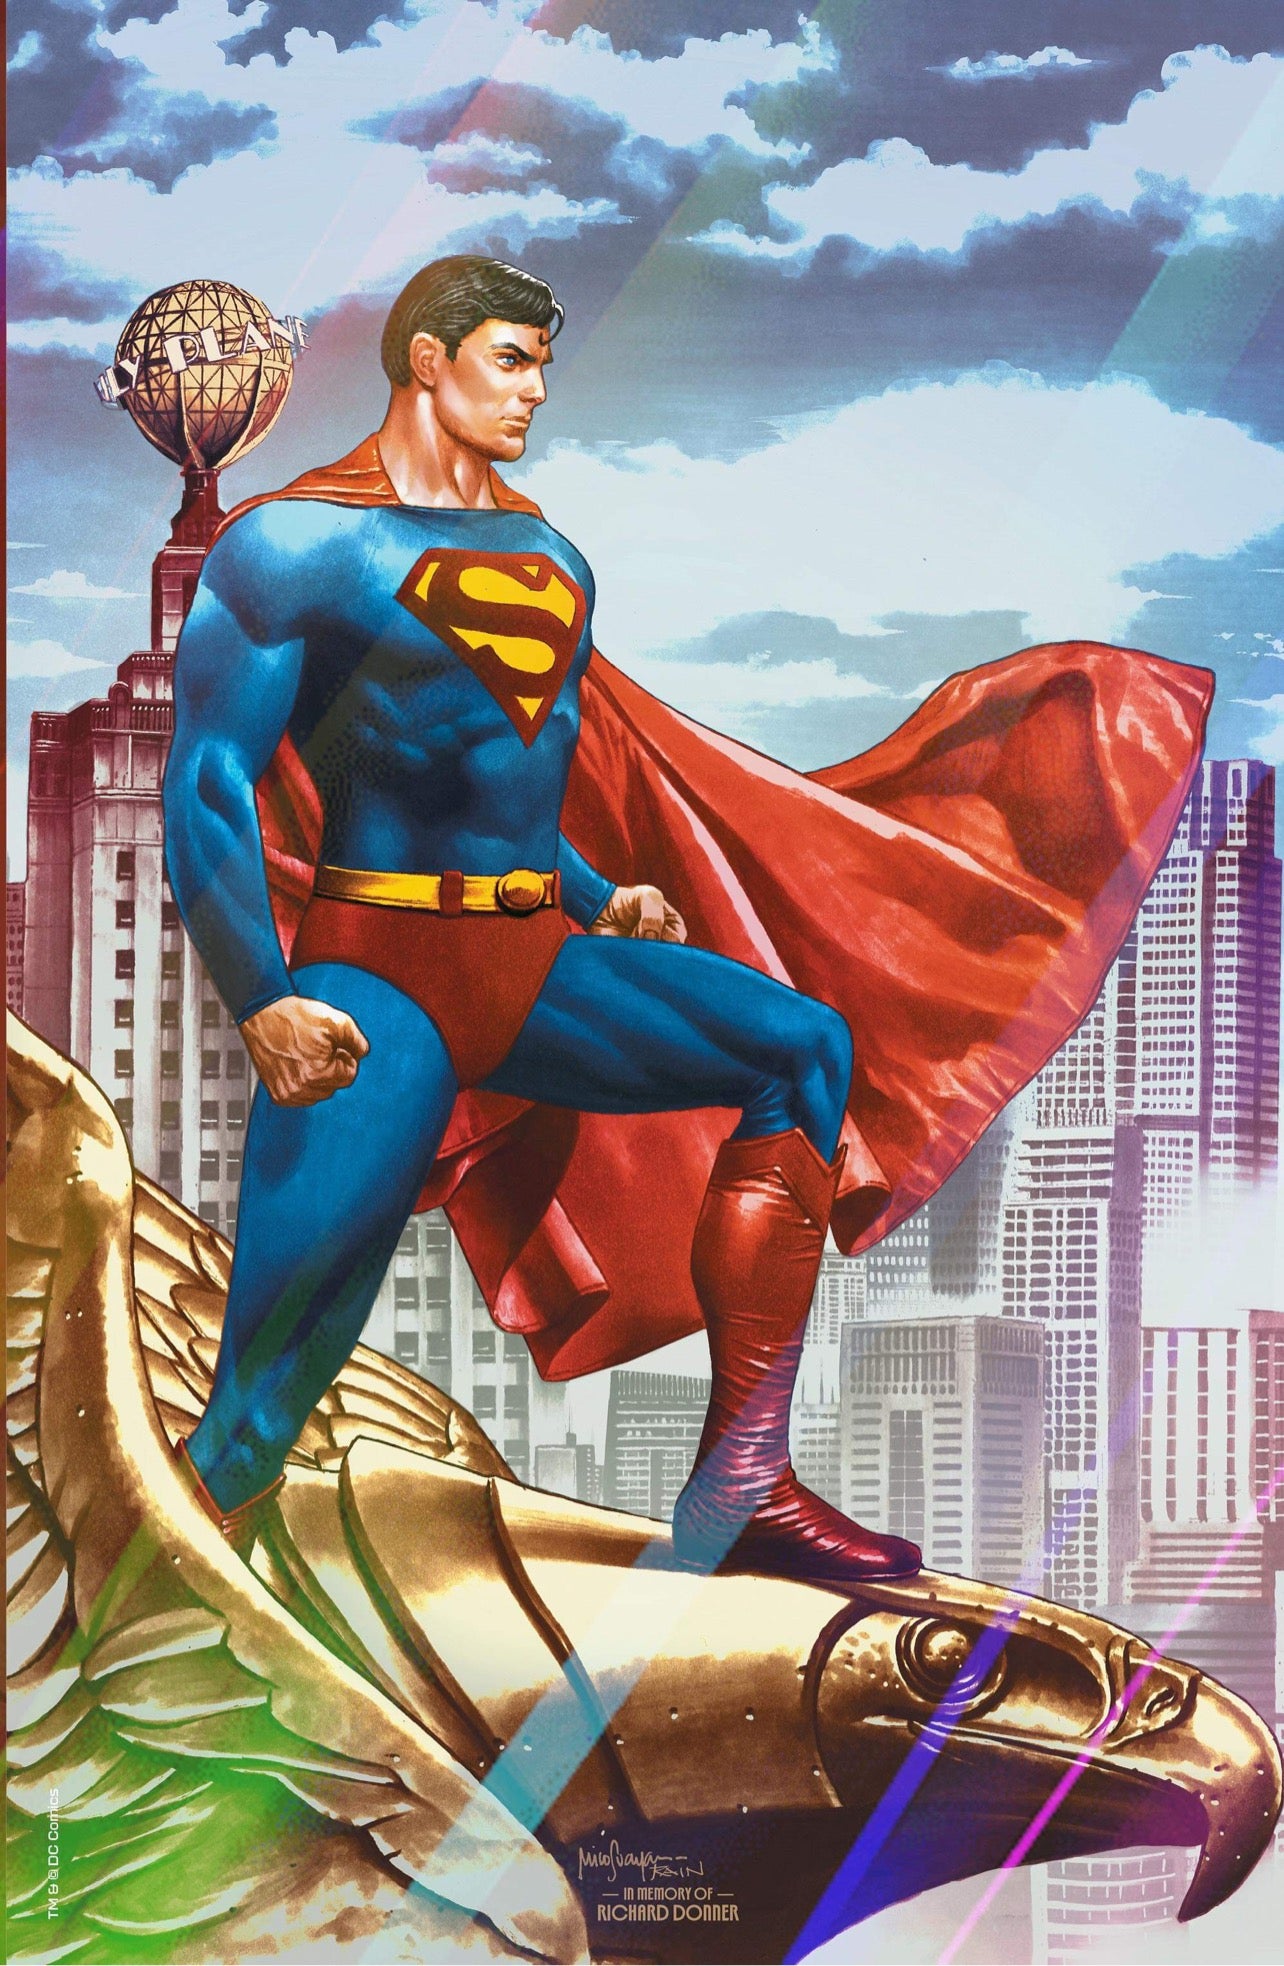 BATMAN SUPERMAN WORLDS FINEST #1 SUPERMAN MEGACON 2022 EXCLUSIVE FOIL VARIANT